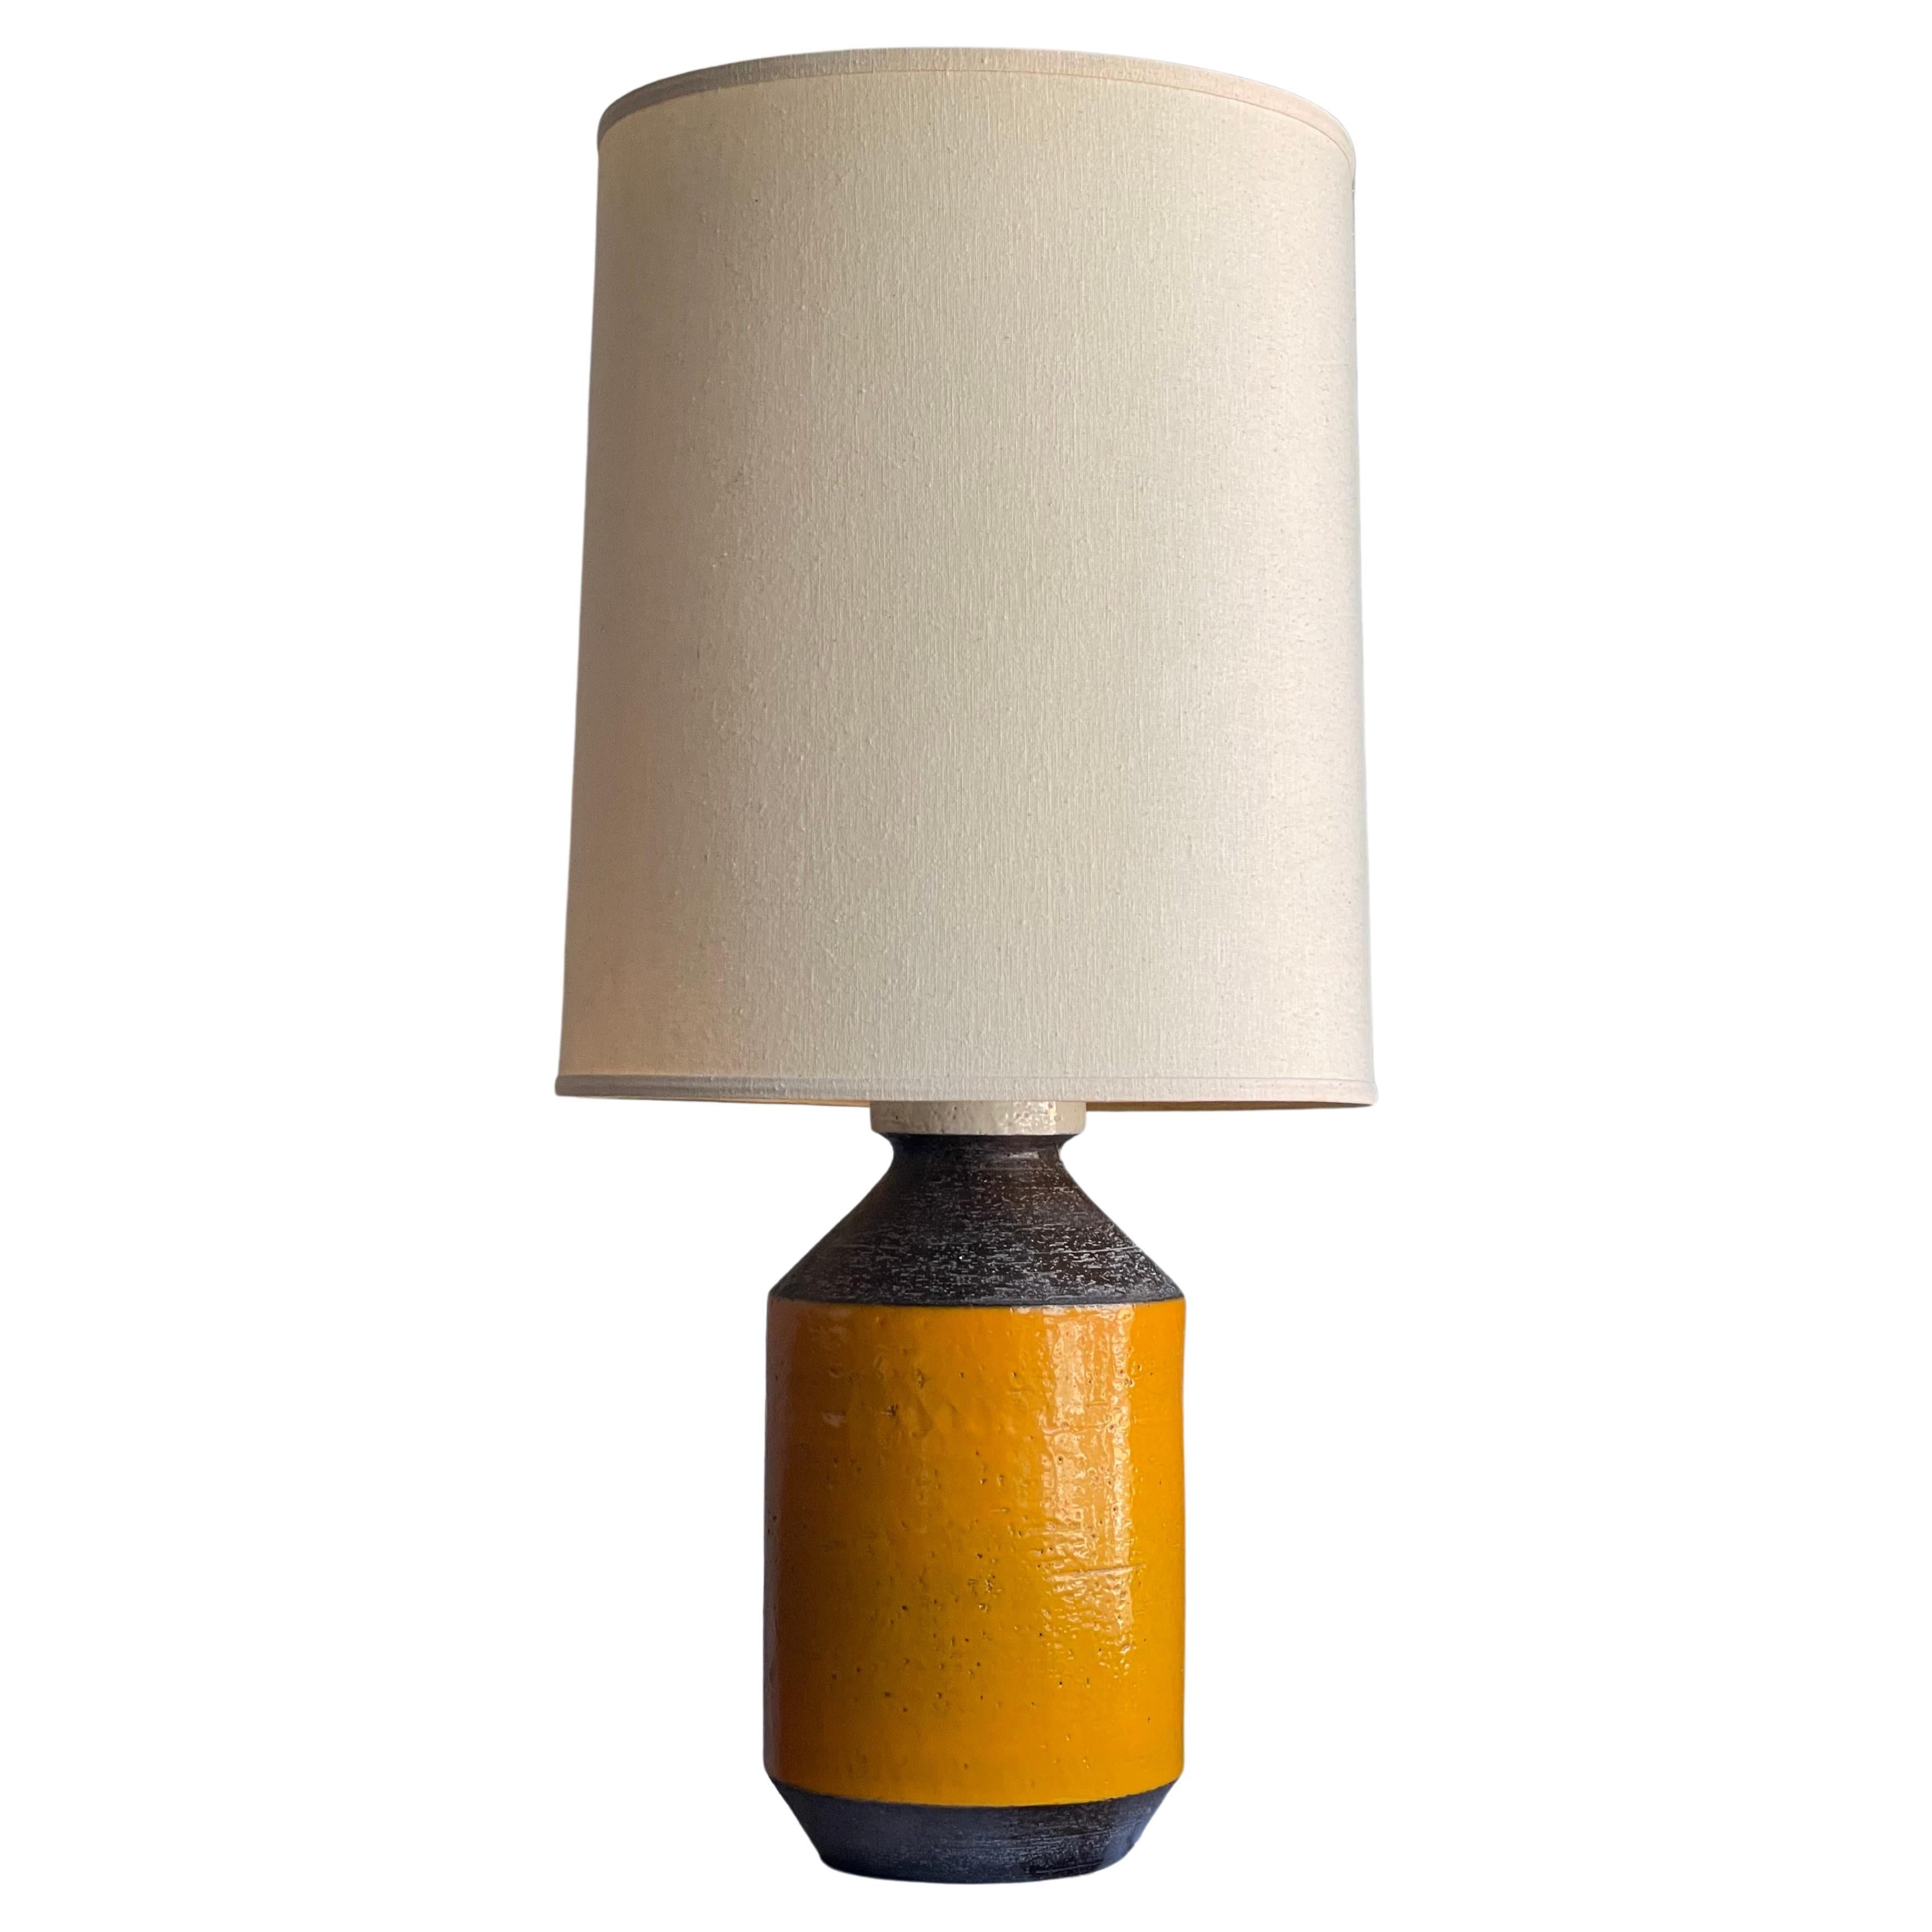 Monumental Aldo Londi Lamp Italian Made for Raymor For Sale